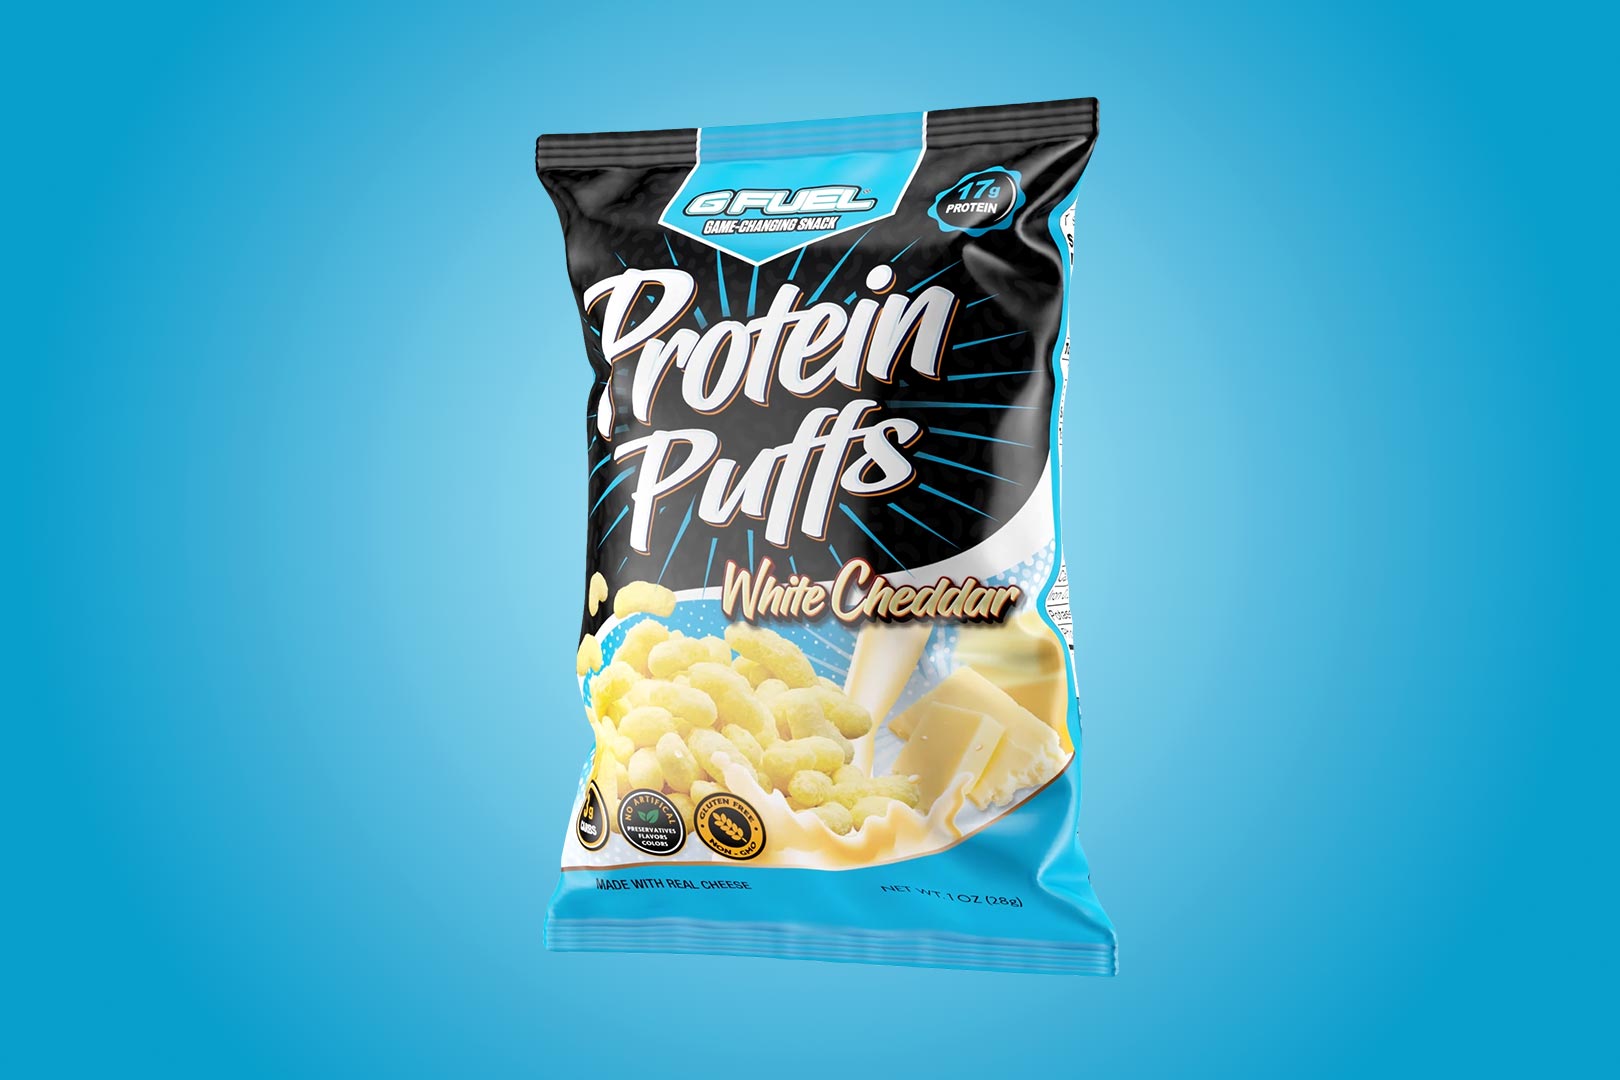 G Fuel Protein Puffs